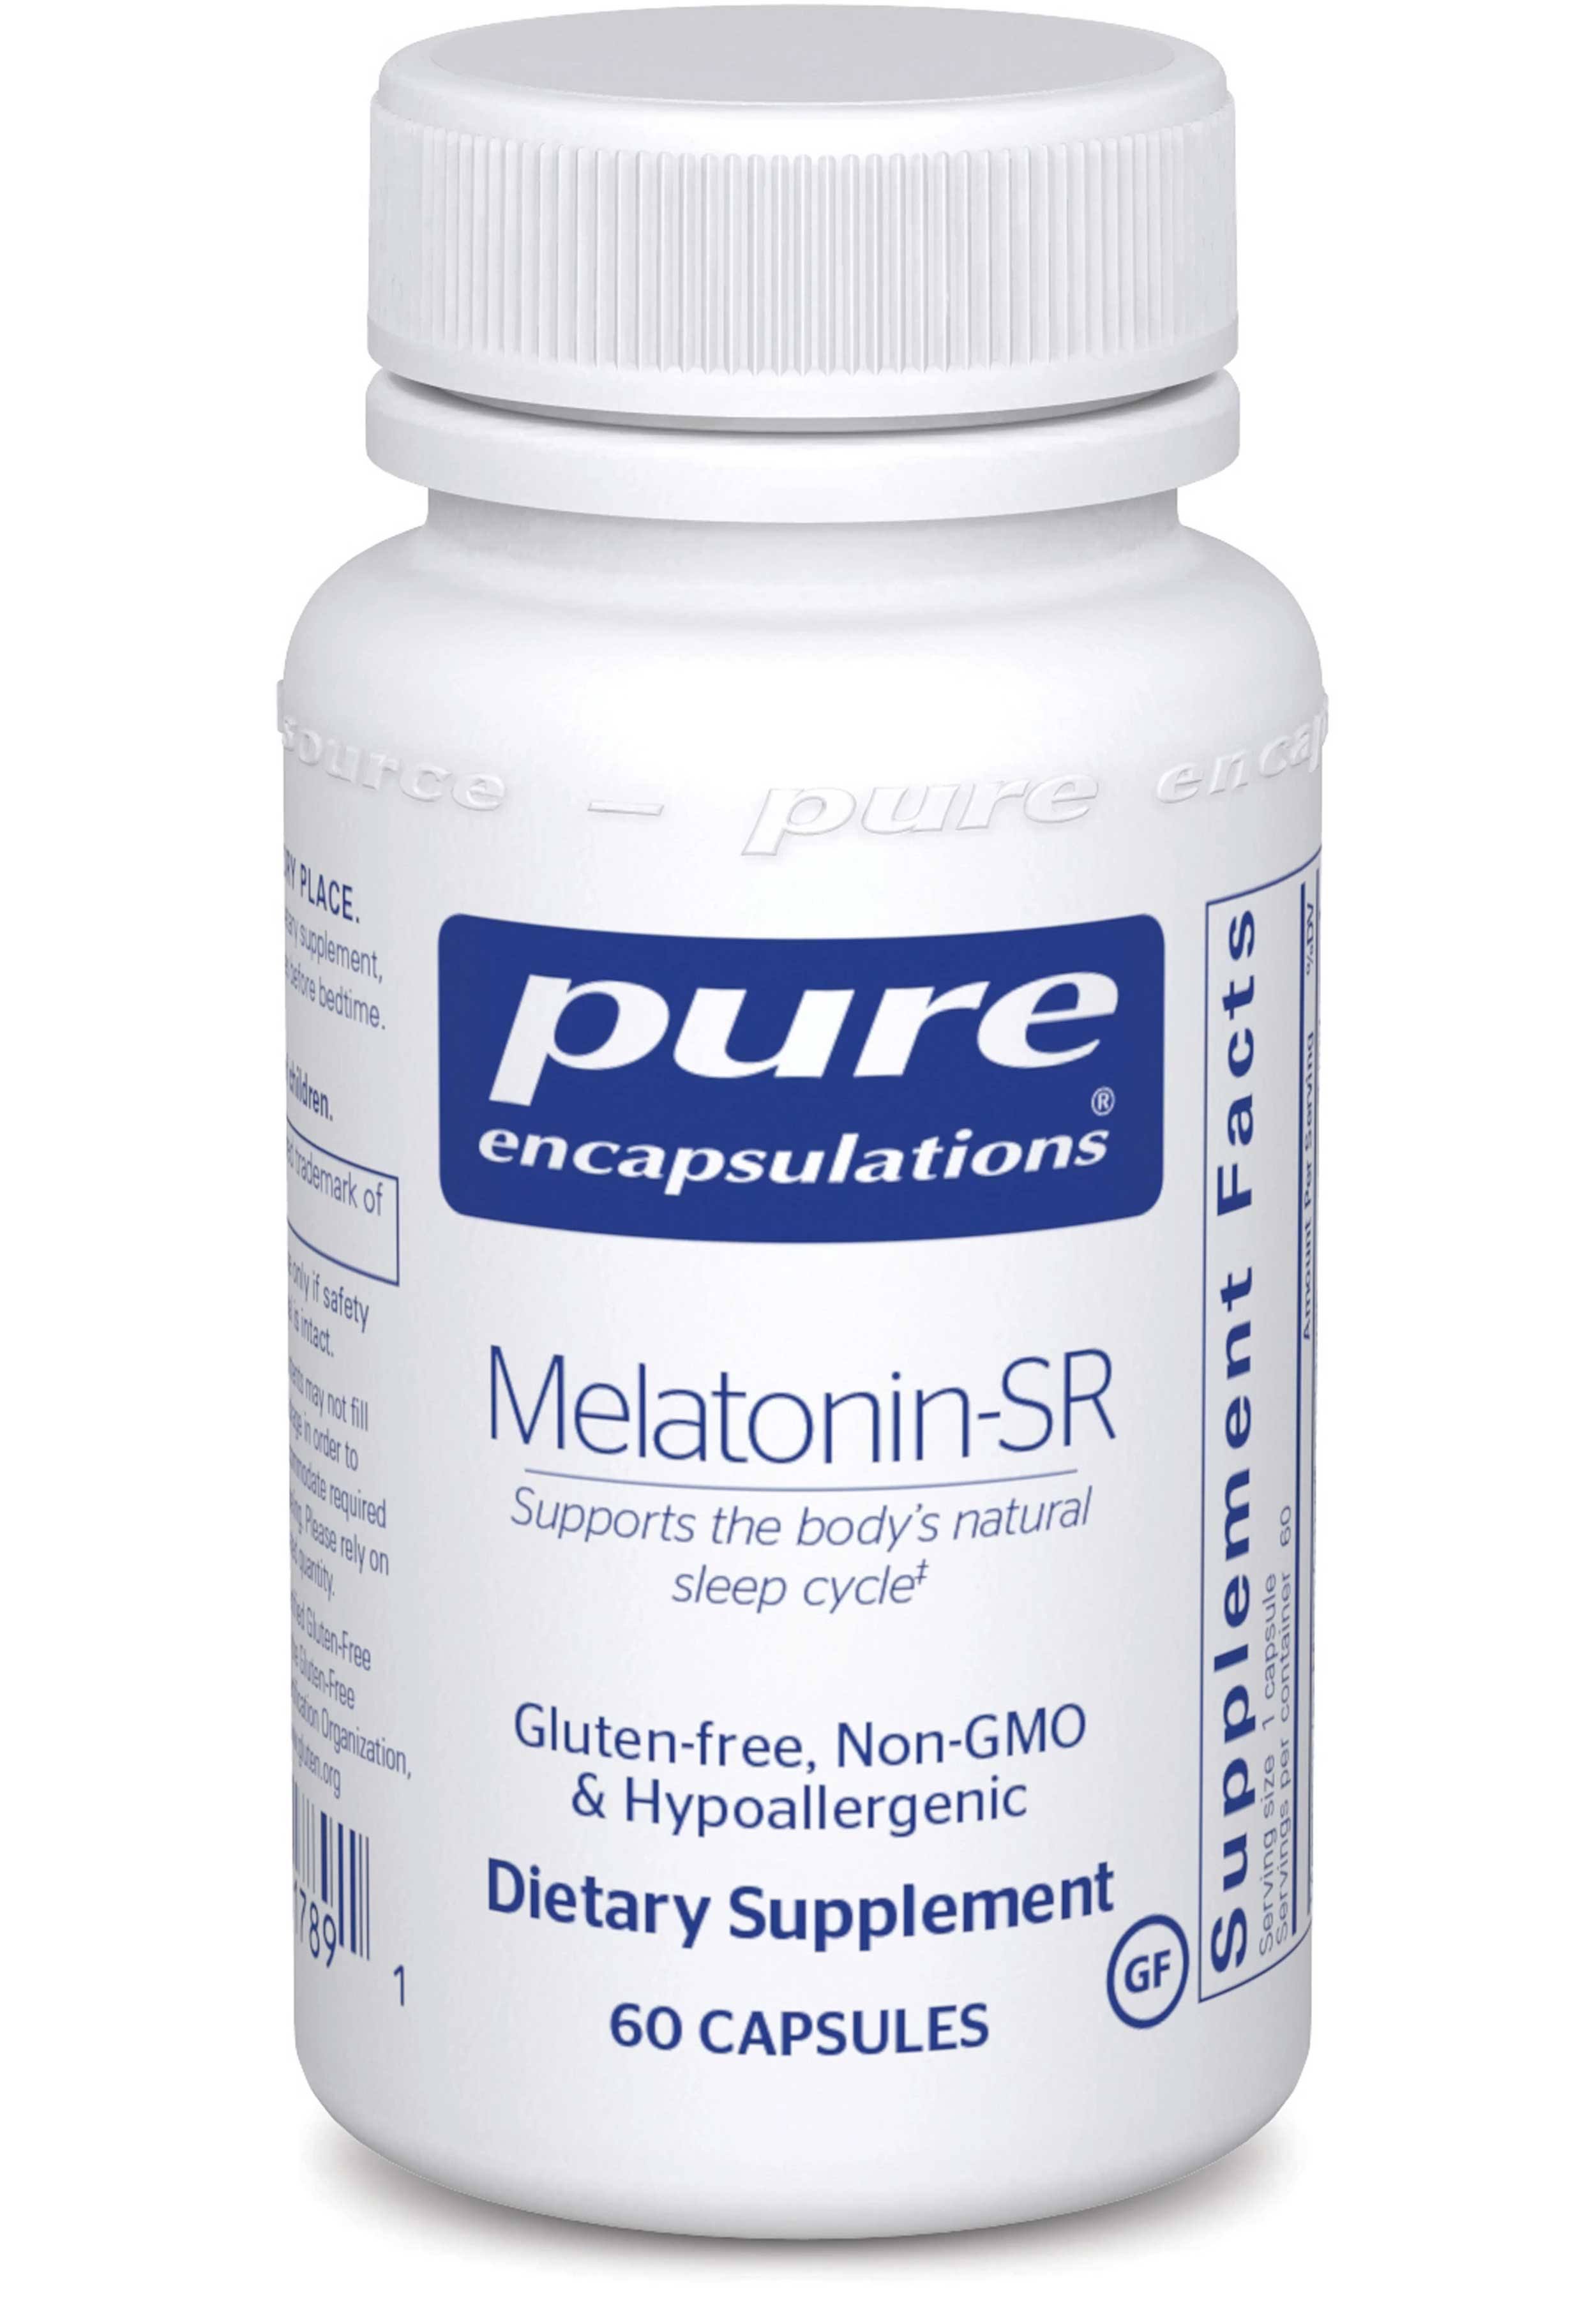 Pure Encapsulations Melatonin-SR Supplement - 60 Capsules